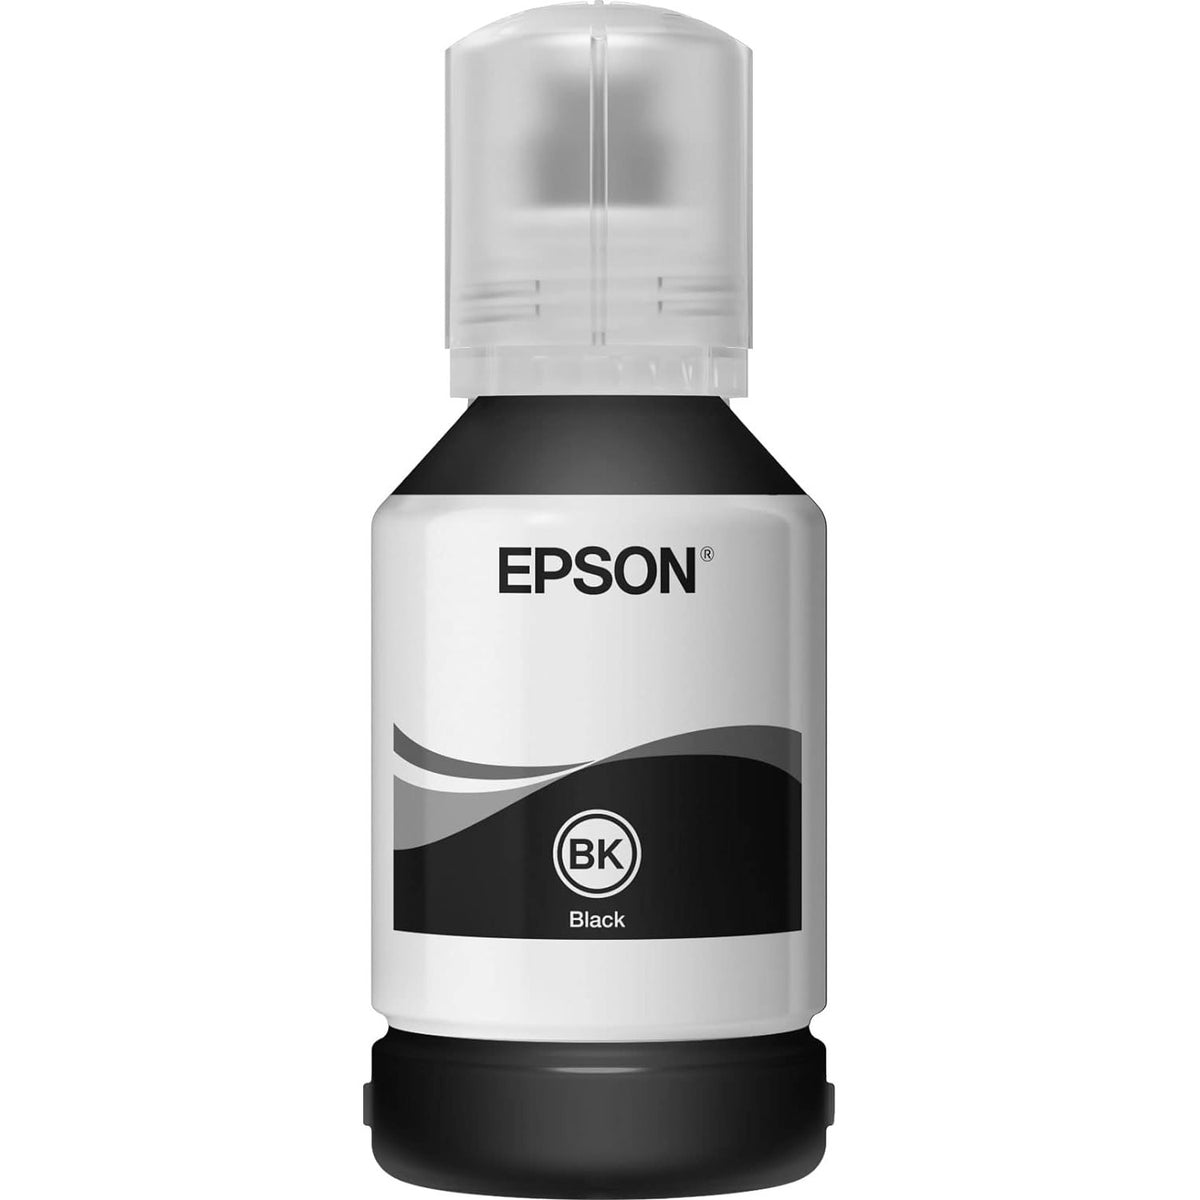 EPSON 101 EcoTank Black ink bottle